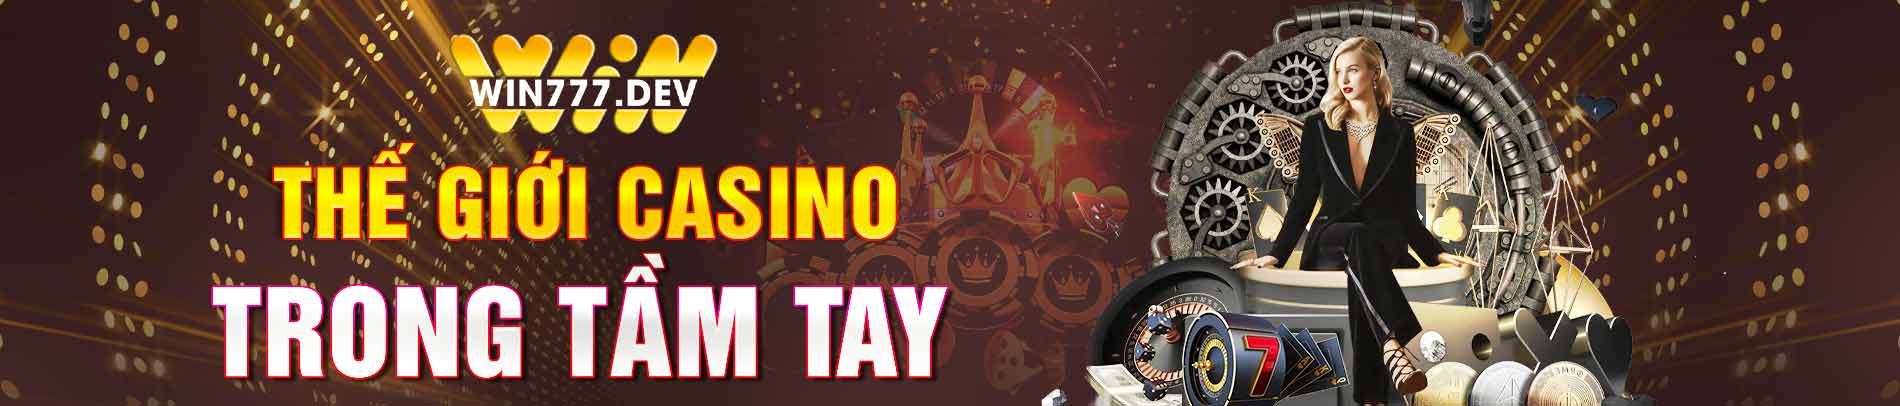 Win777 thế giới casino trong tầm tay